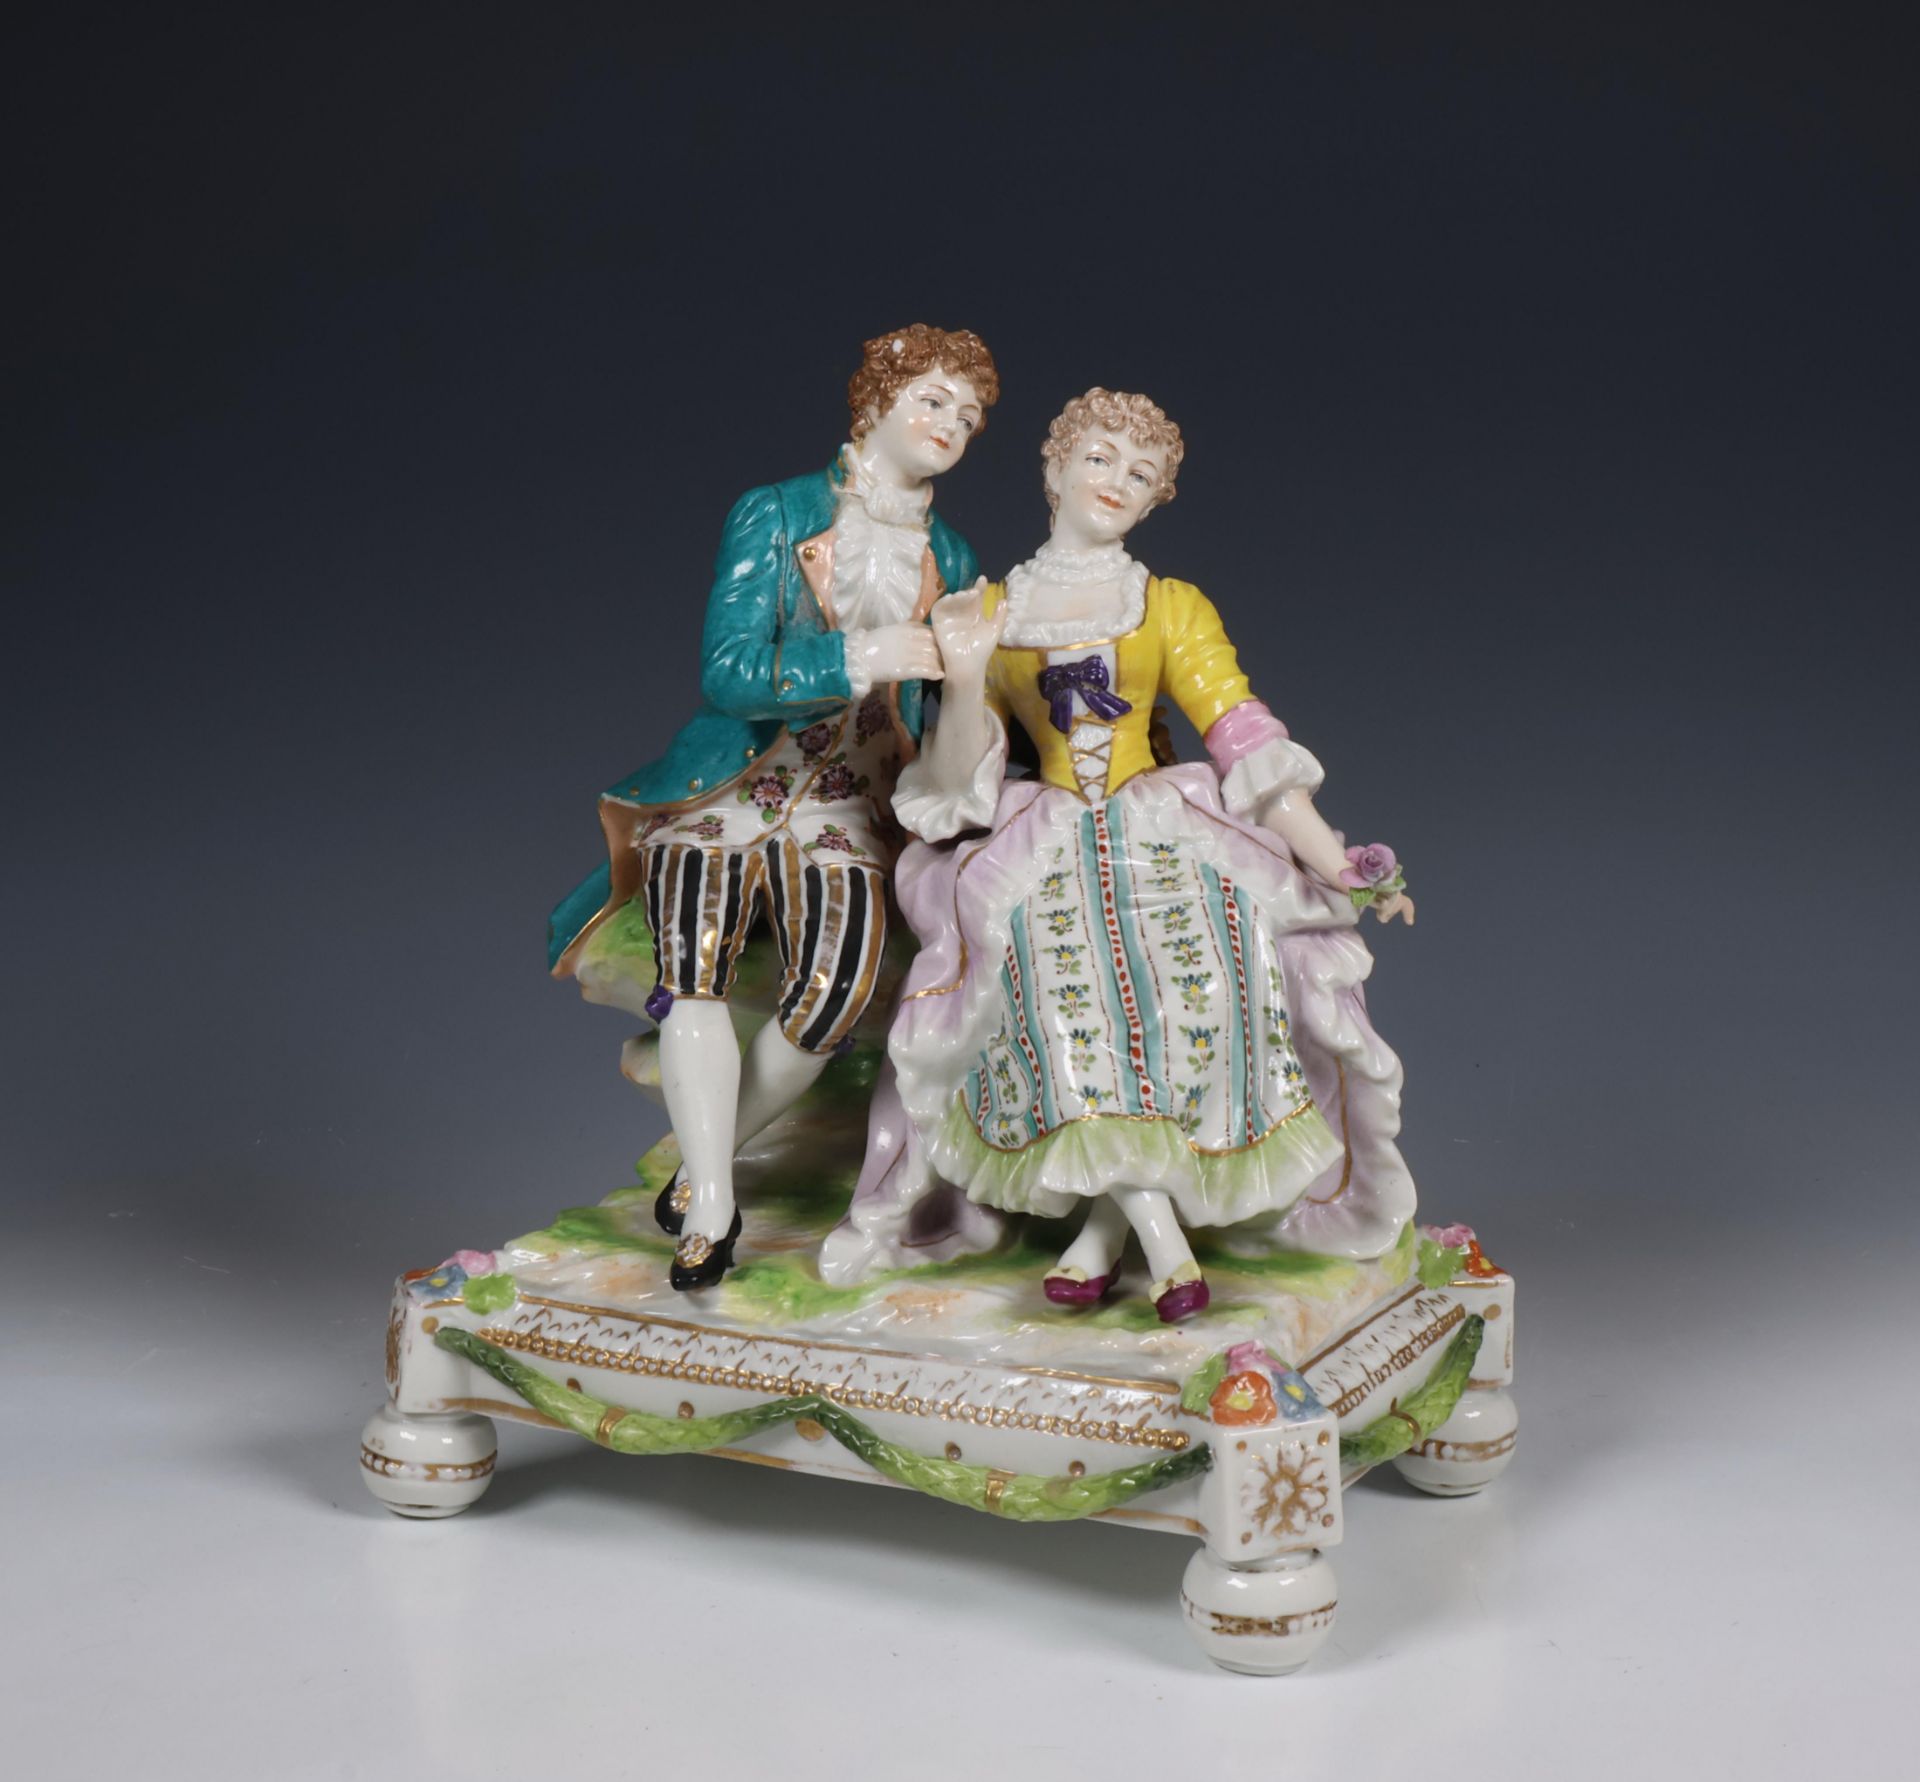 Höchst, porseleinen vormstuk van Romantisch koppel, 19e eeuw;